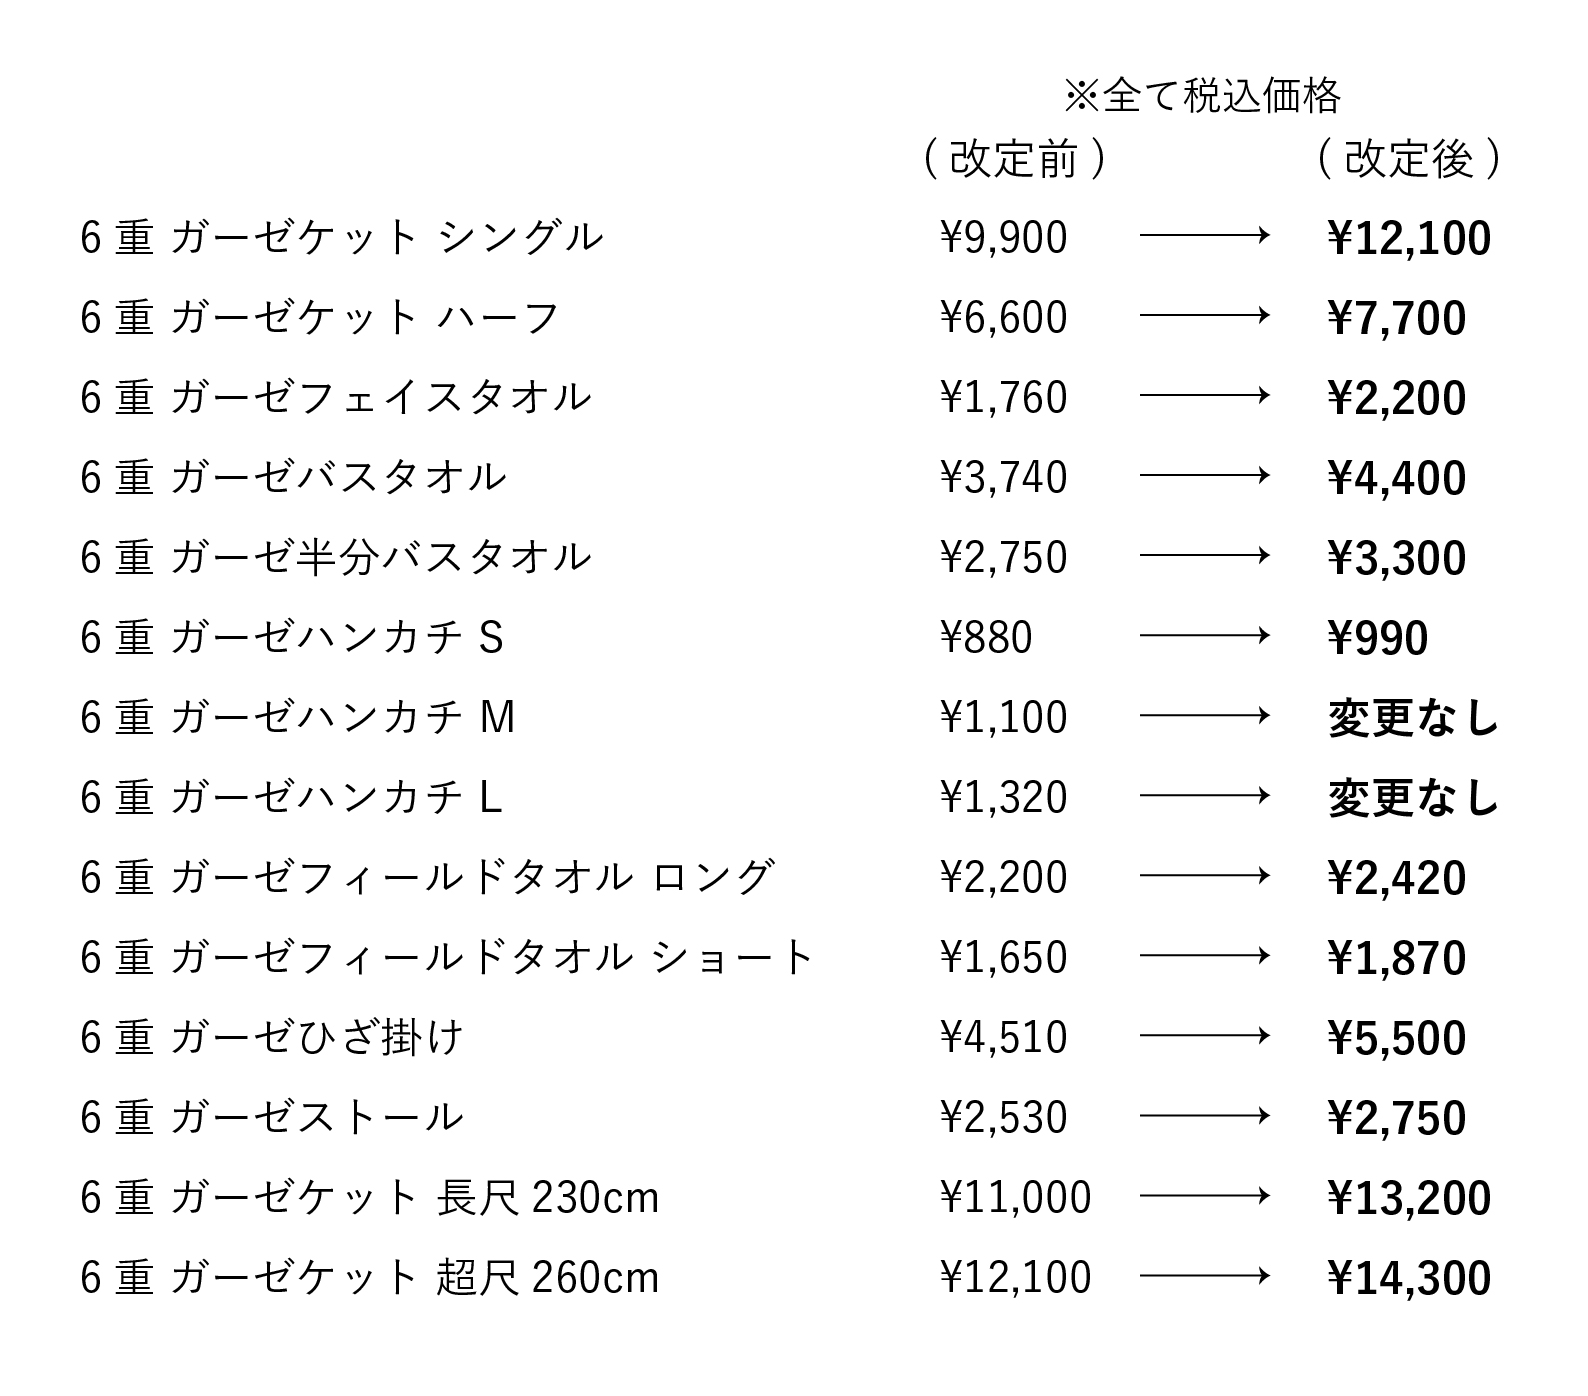 【重要】クムコ商品　価格改定のお知らせ 【変更日：4/3(月)】